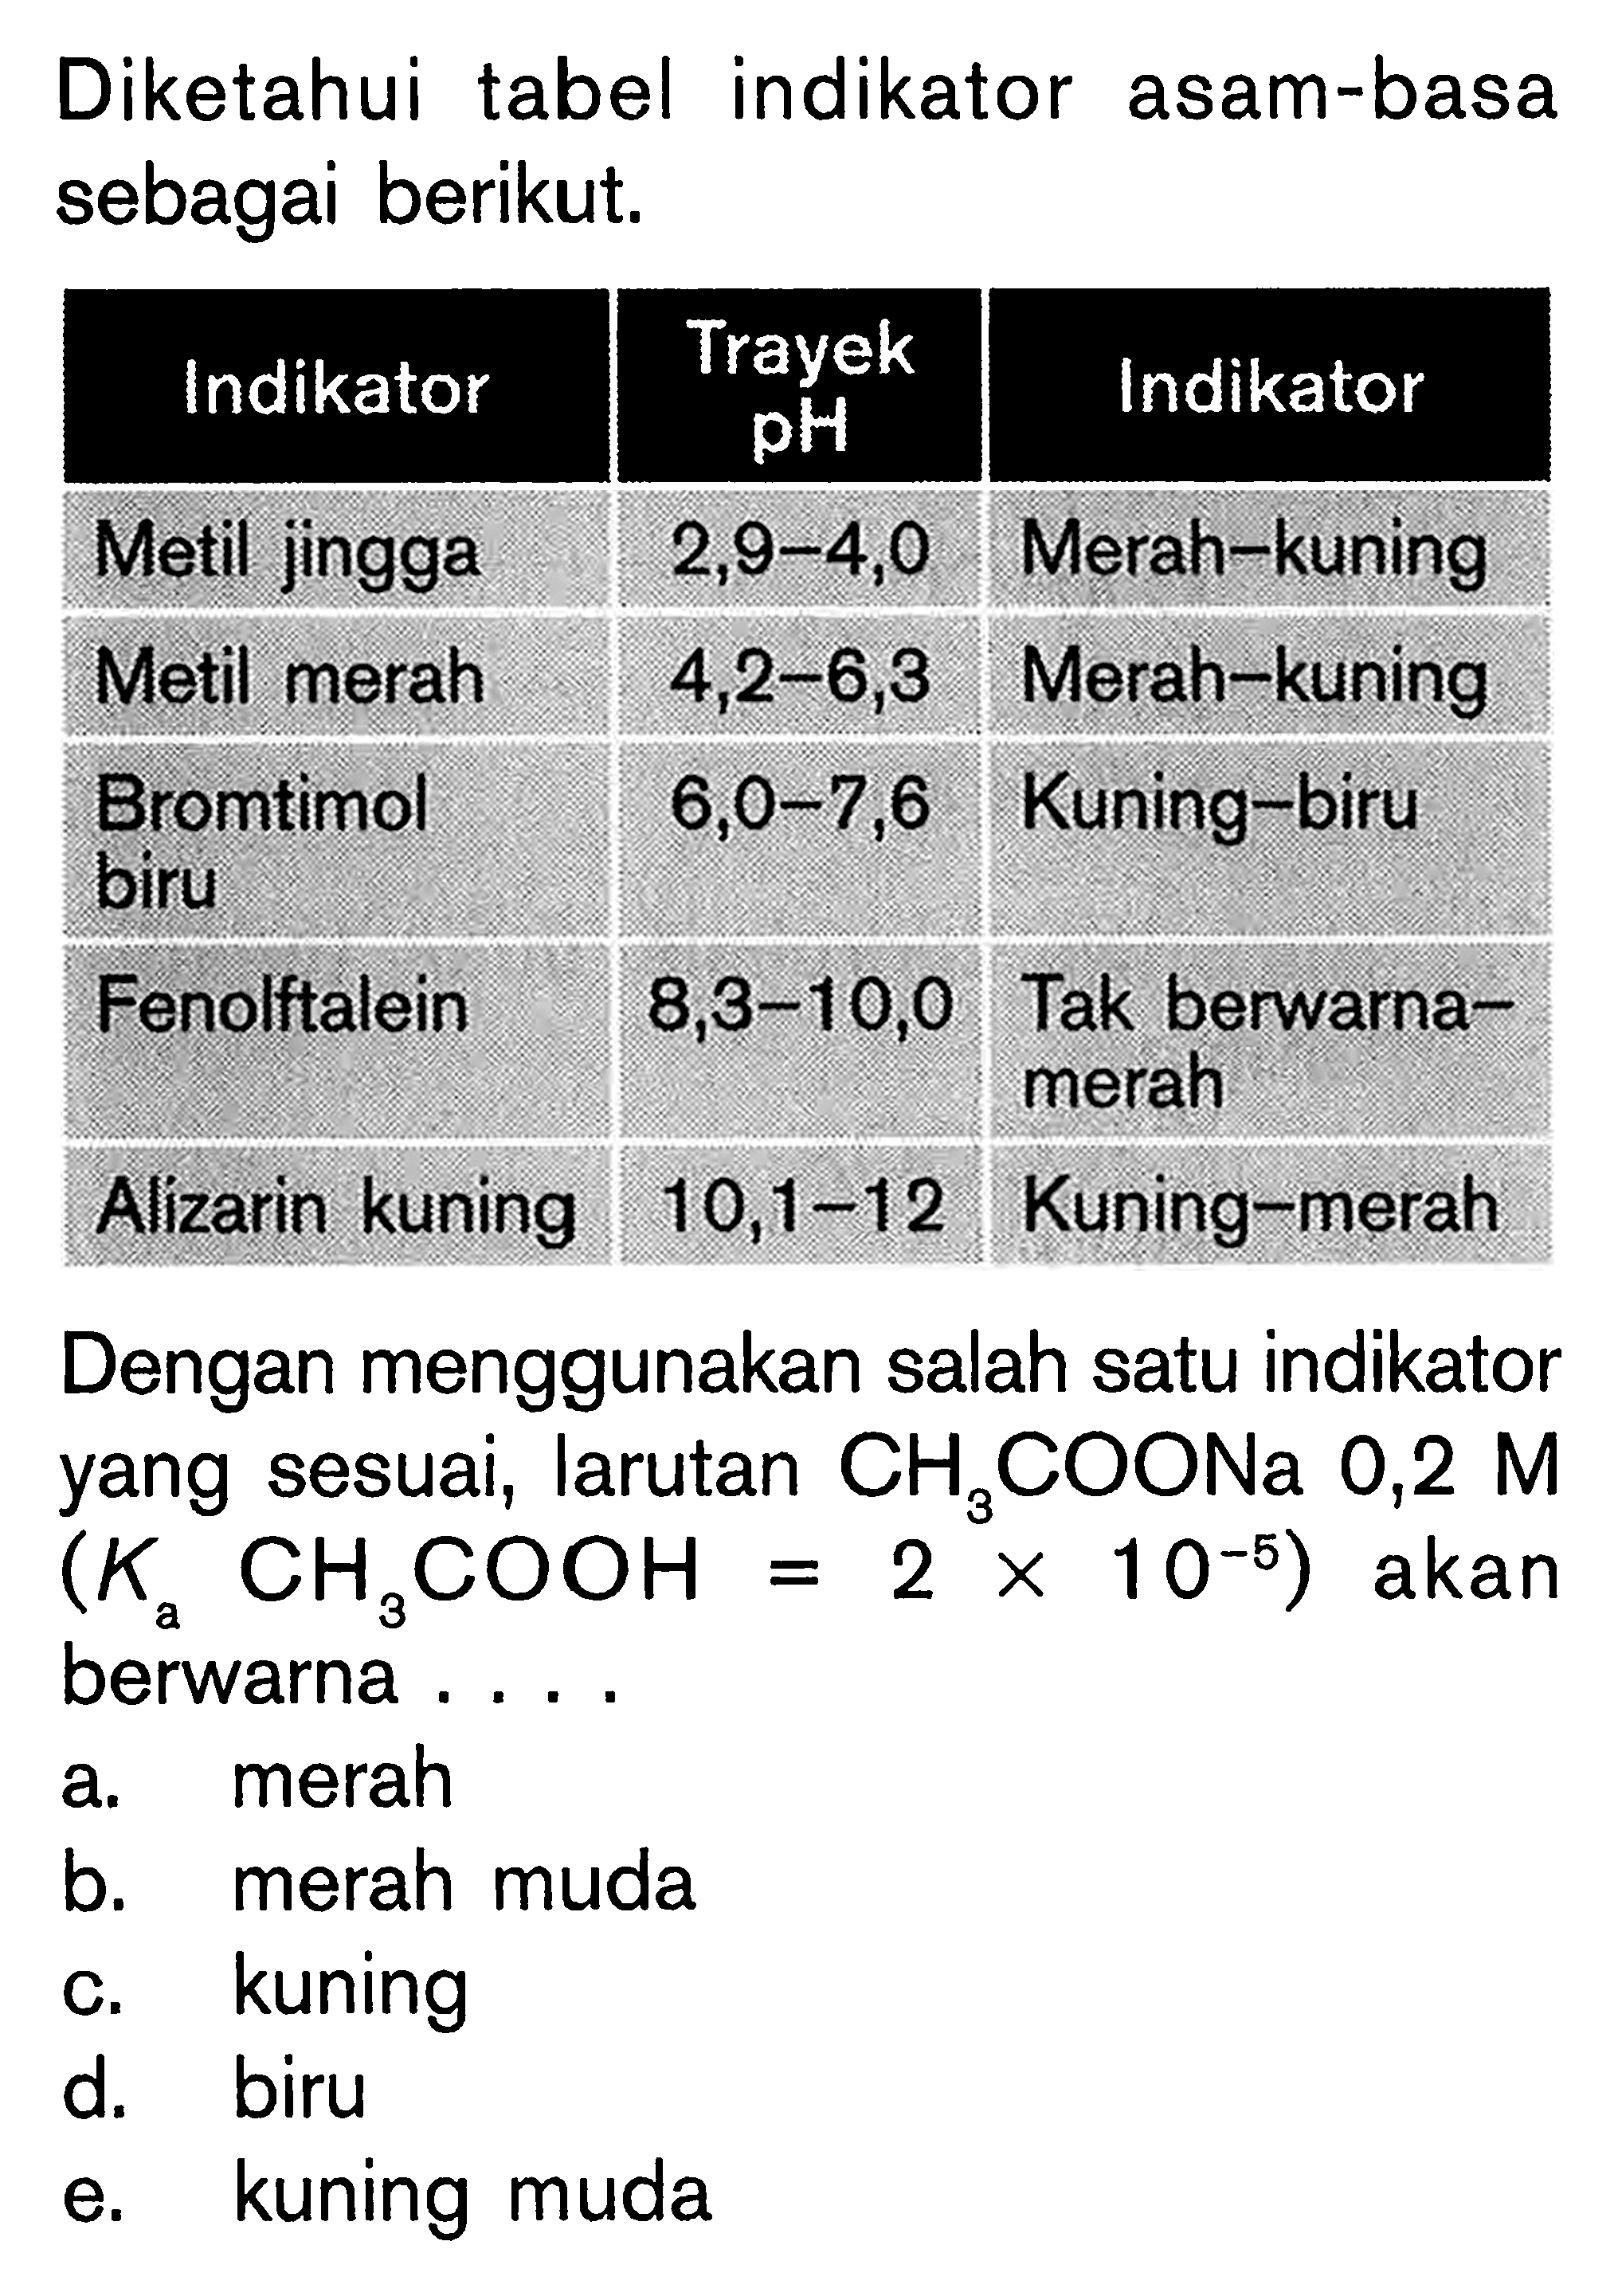 Diketahui tabel indikator asam-basa sebagai berikut.Indikator Trayek pH IndikatorMetil jingga 2,9-4,0 Merah-kuningMetil merah 4,2-6,3 Merah-kuningBromtimol biru 6,0-7,6 Kuning-biruFenolftalein 8,3-10,0 Tak berwarna merahAlizarin kuning 10,1-12 Kuning-merahDengan menggunakan salah satu indikator yang sesuai, larutan CH3COONa 0,2 M (Ka CH3COOH=2x10^-5) akan berwarna ....